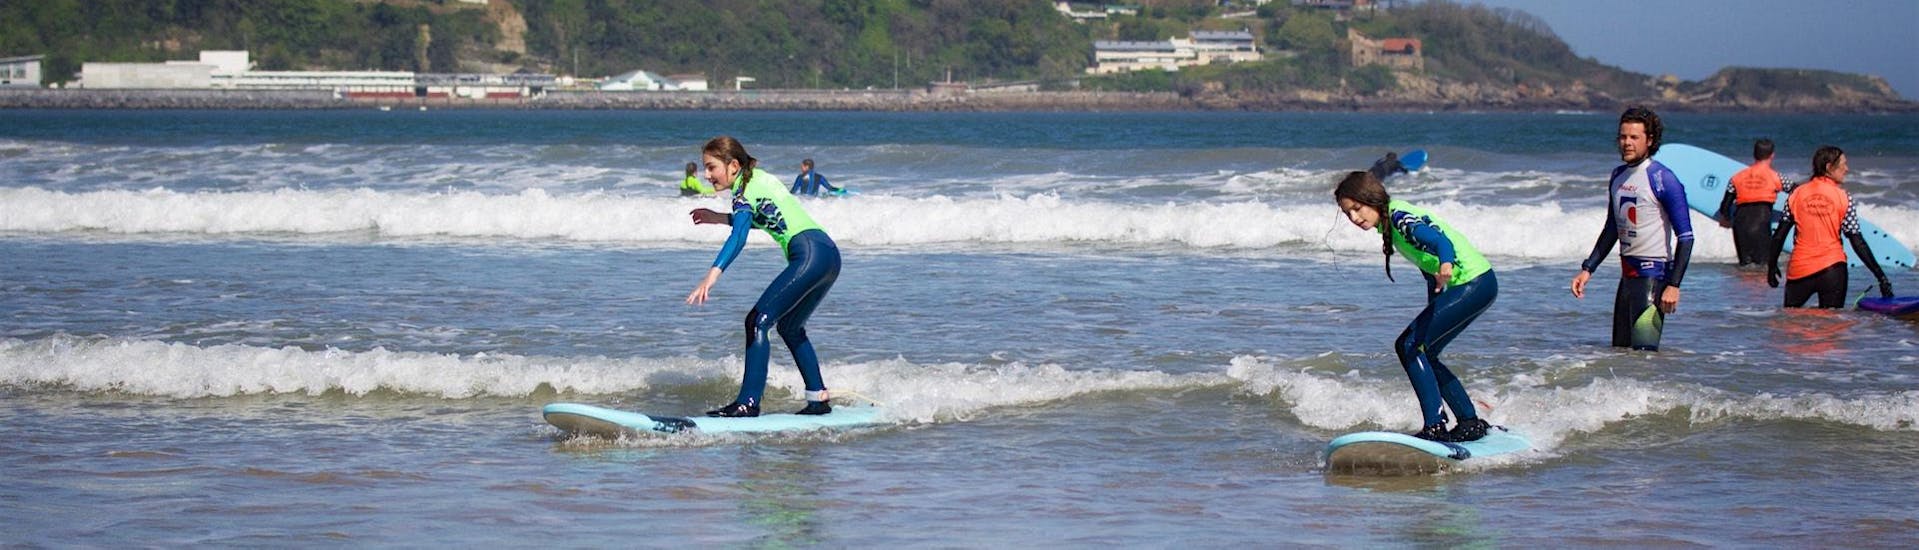 Lezioni di surf a Saint-Jean-de-Luz da 7 anni per tutti i livelli.